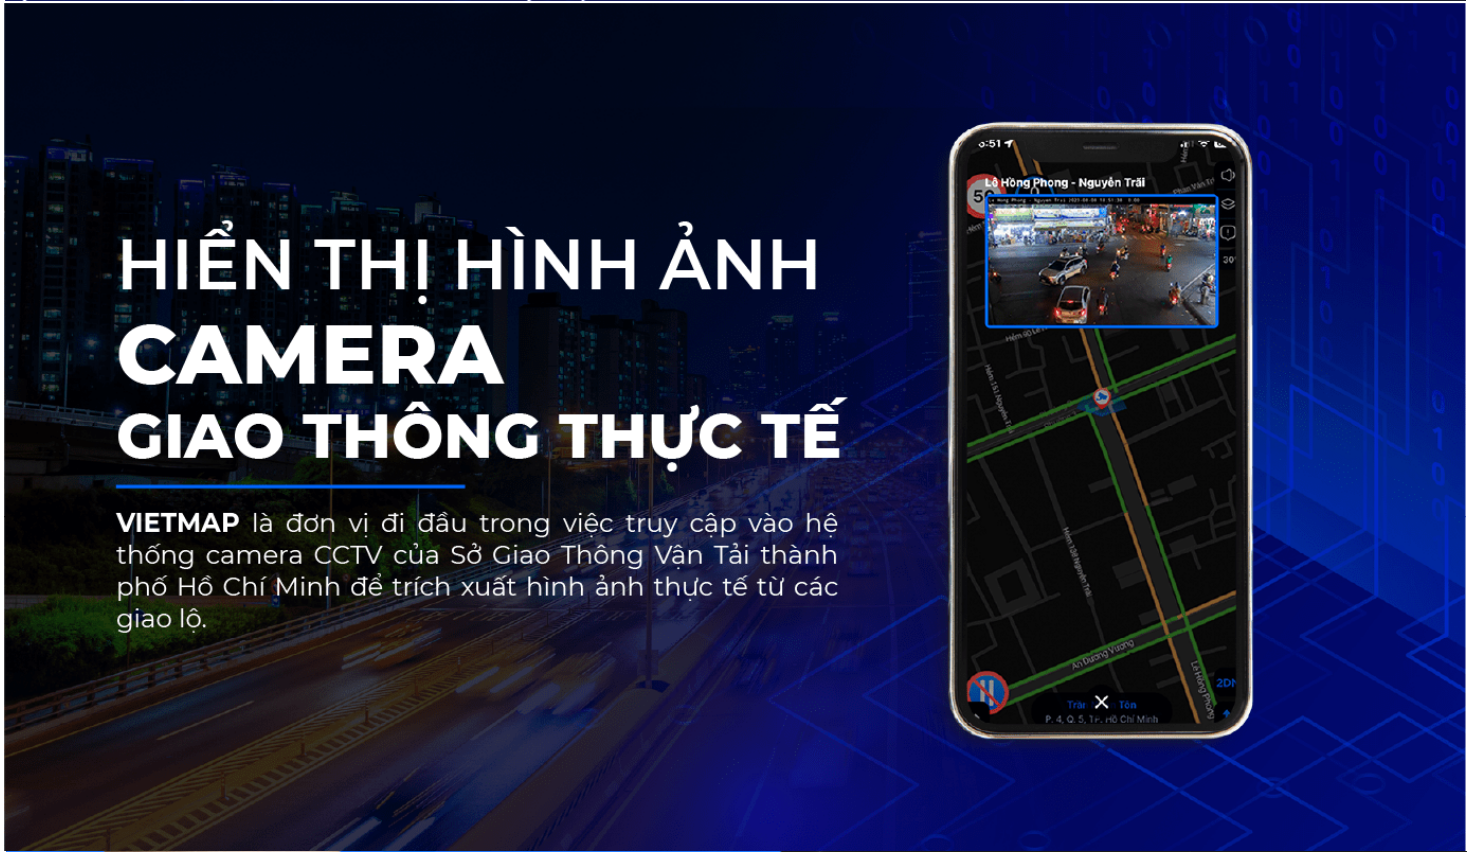 Vietmap Live Pro - Bản đồ dẫn đường cho ô tô có đầy đủ cảnh báo giao thông